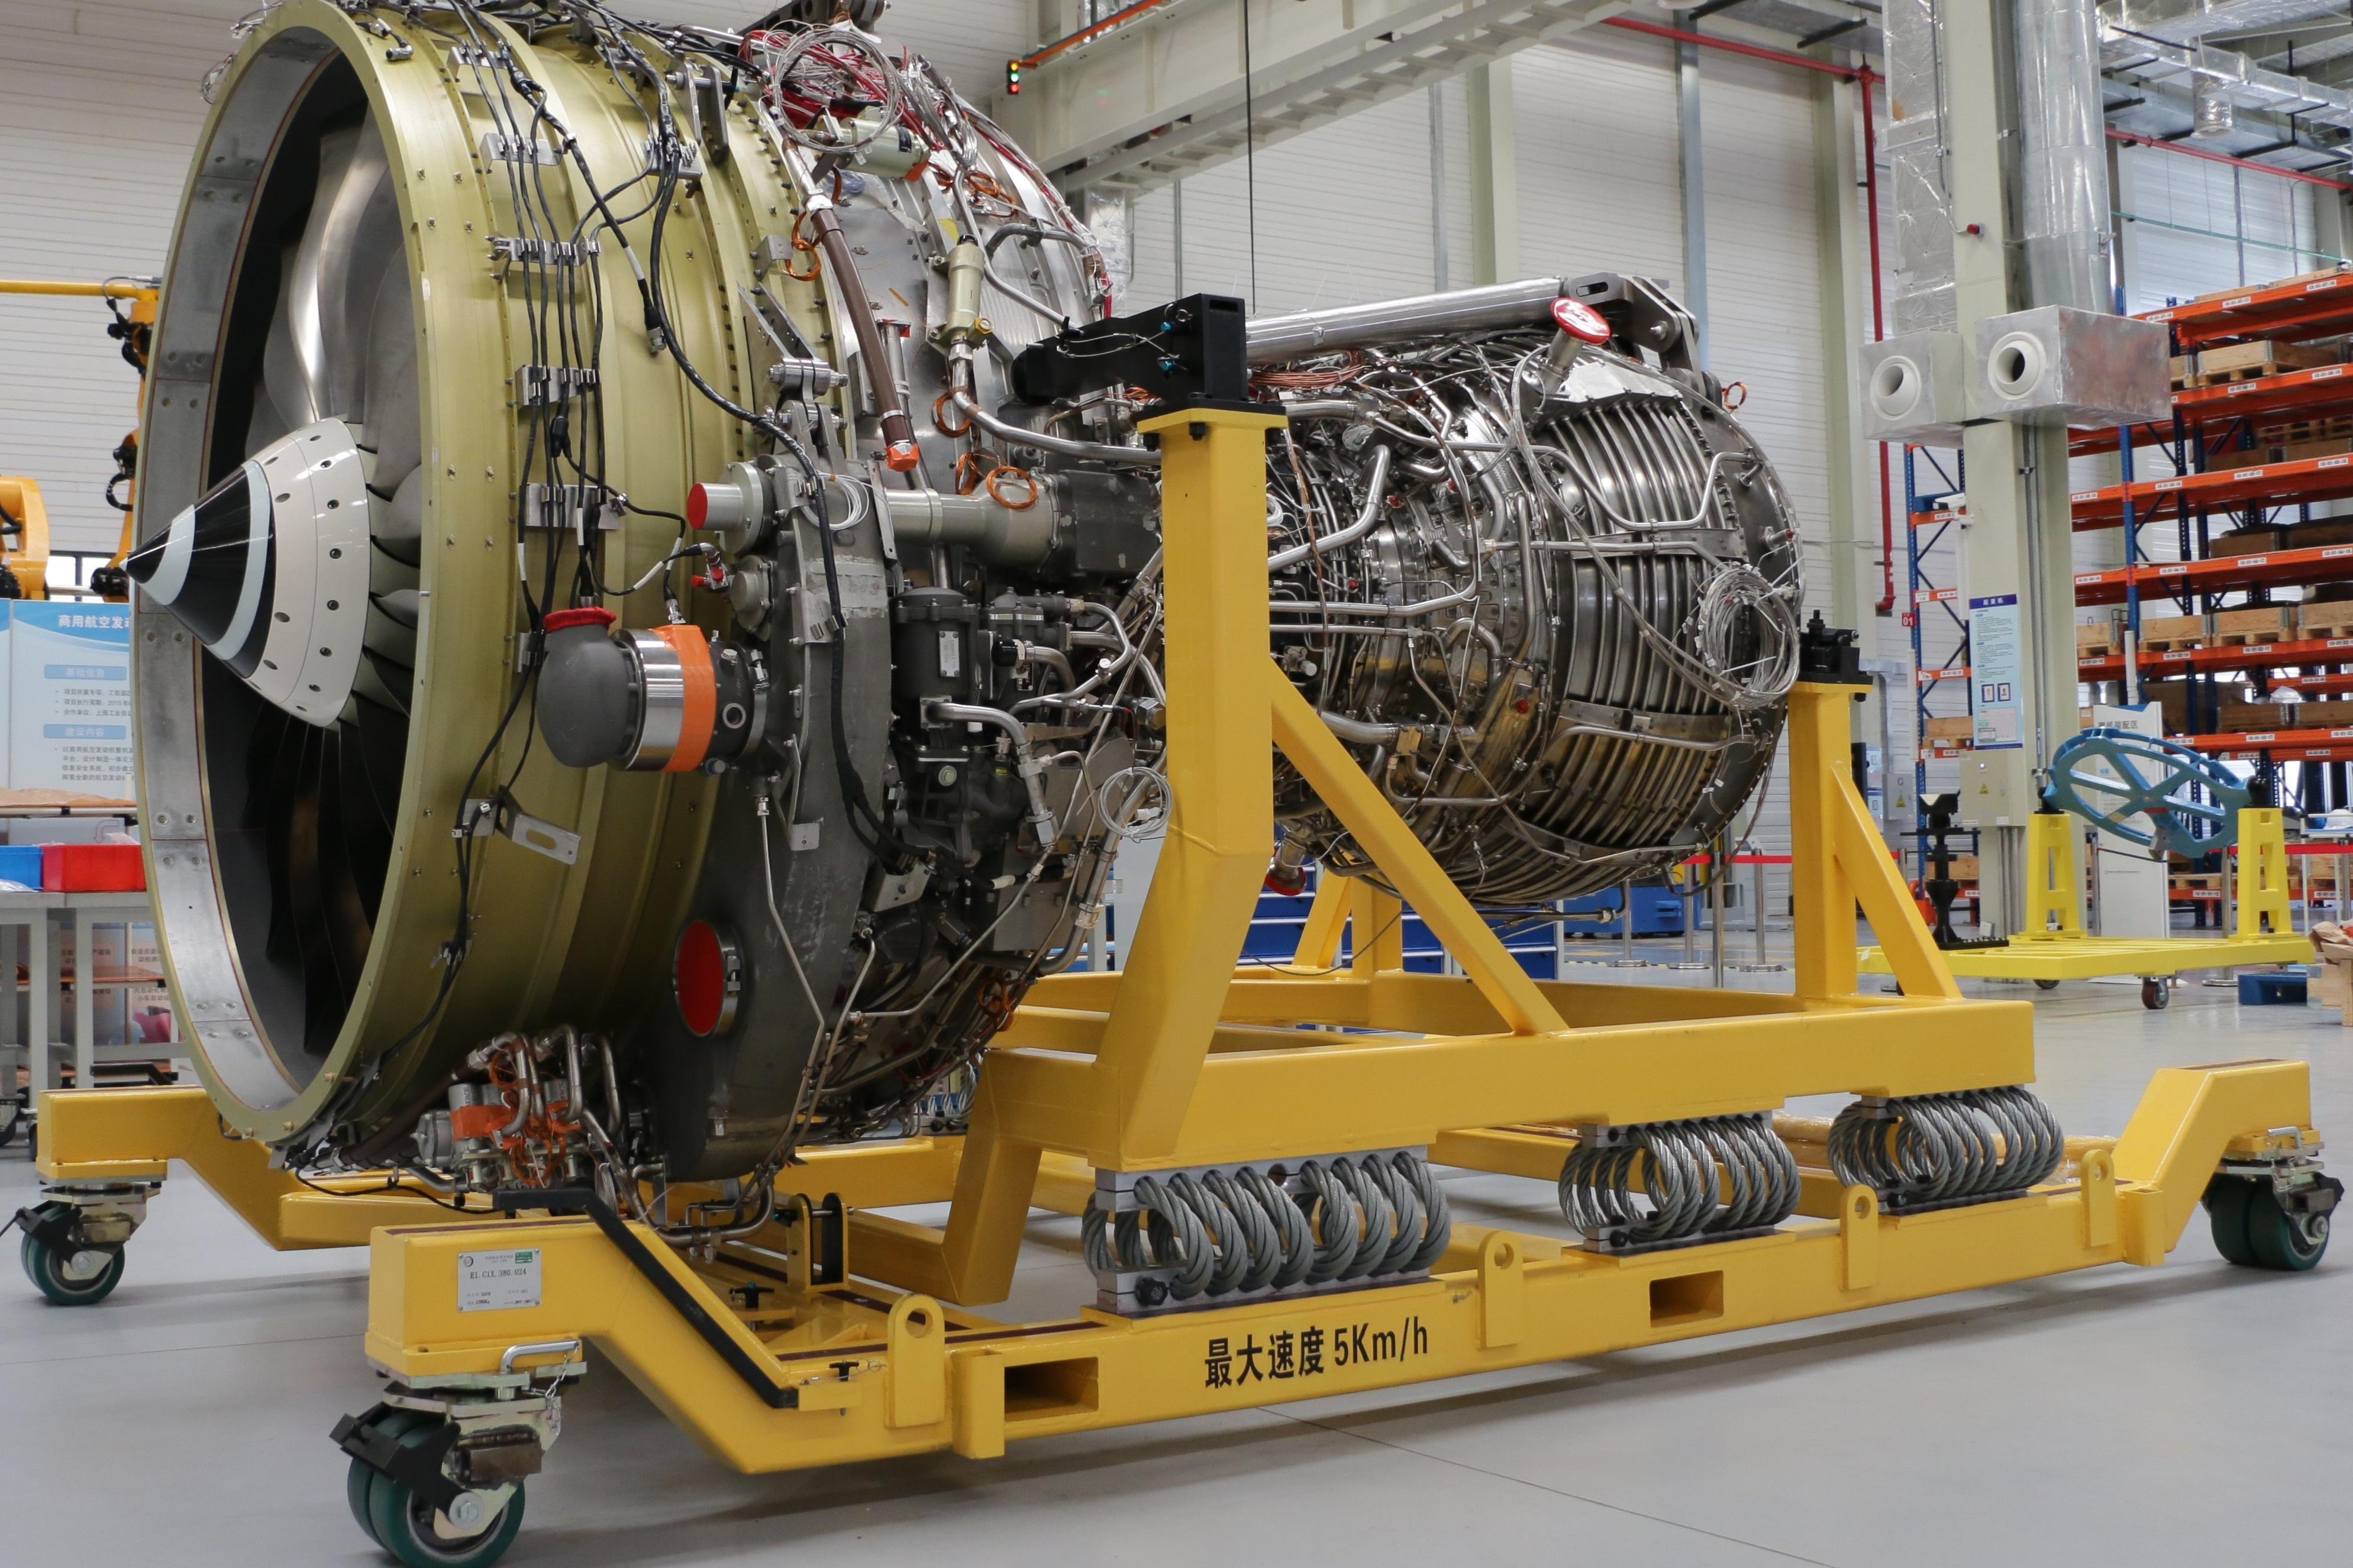 国产大飞机传来福音中国涡扇发动机推力超35吨cr929有新进展